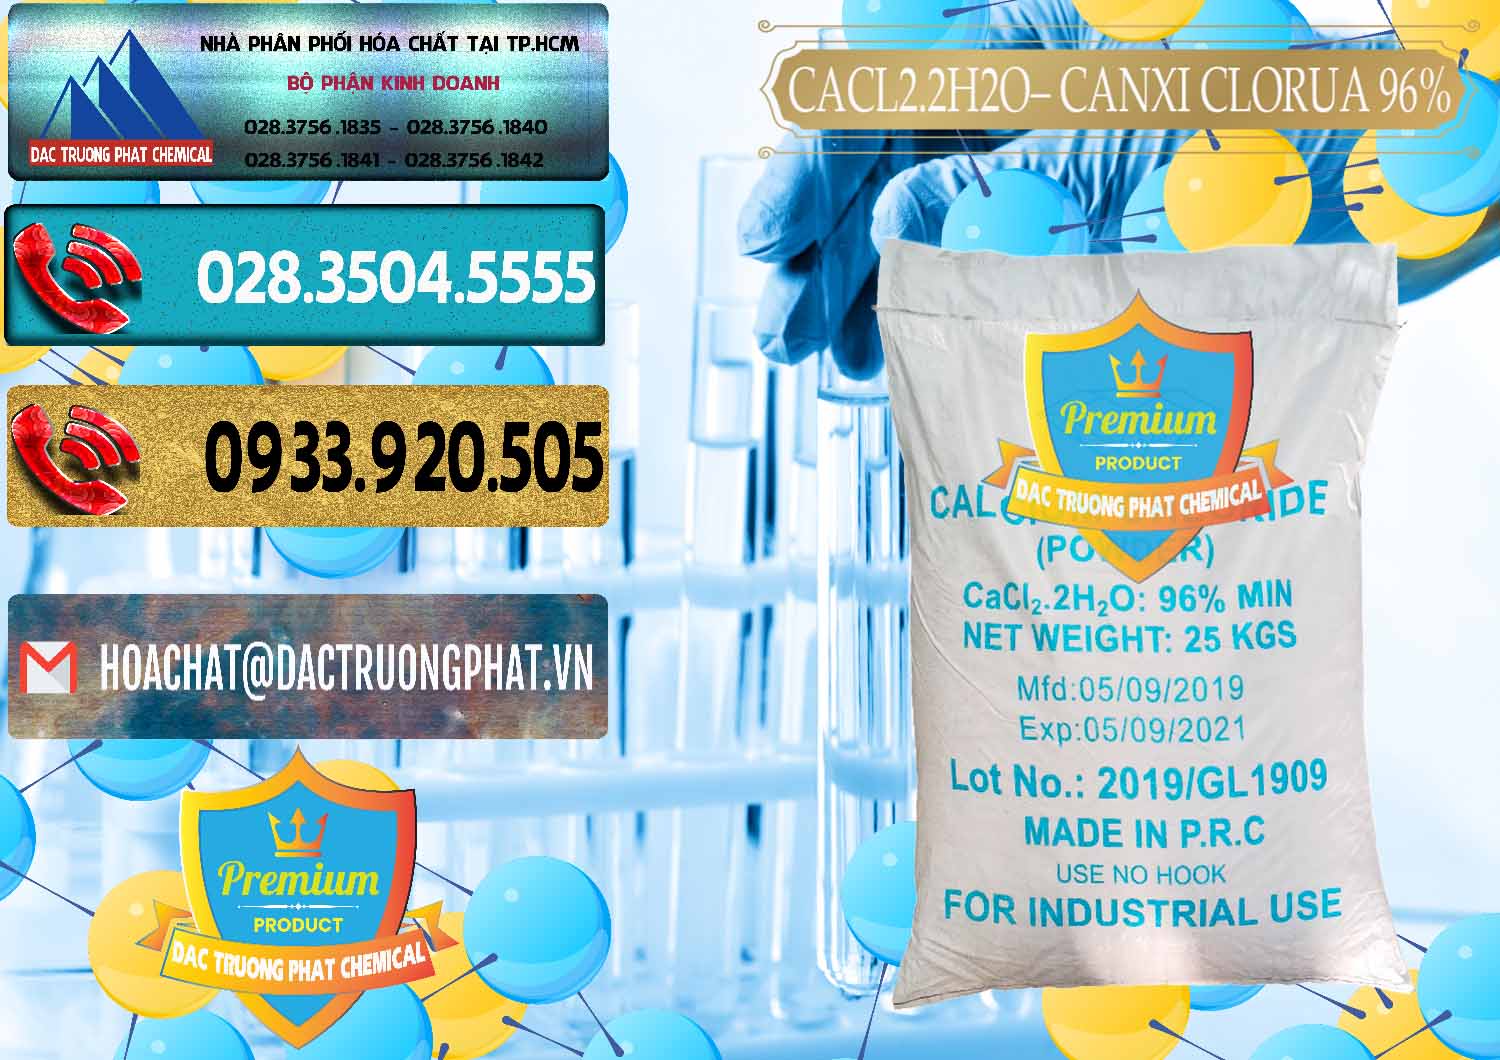 Đơn vị cung cấp & bán CaCl2 – Canxi Clorua 96% Logo Kim Cương Trung Quốc China - 0040 - Nơi bán ( cung cấp ) hóa chất tại TP.HCM - hoachatdetnhuom.com